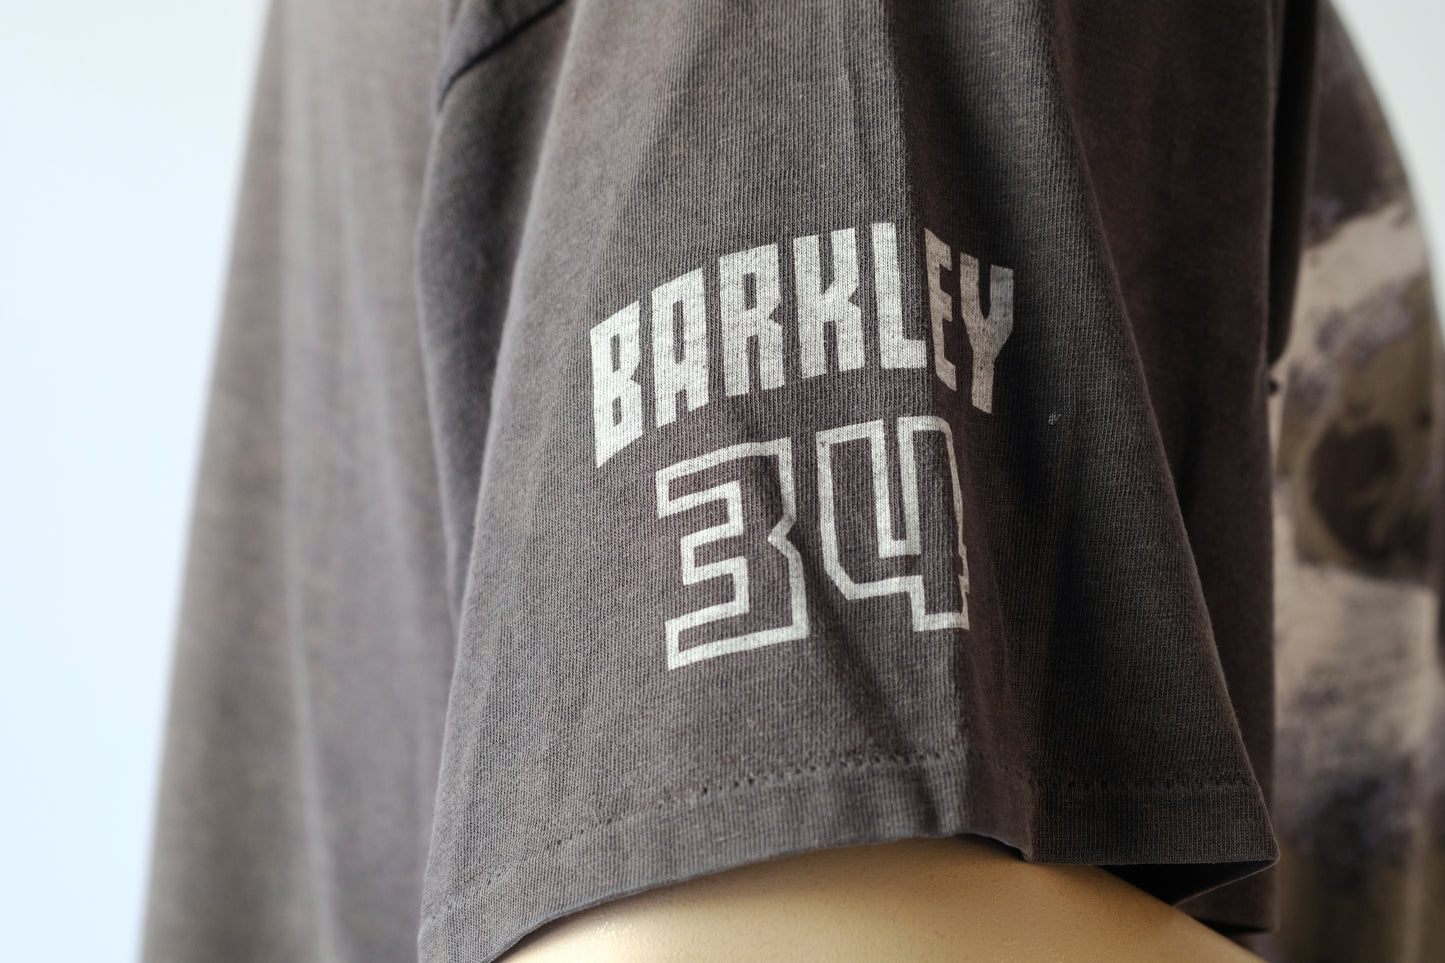 T-Shirt Nike Charles Barkley